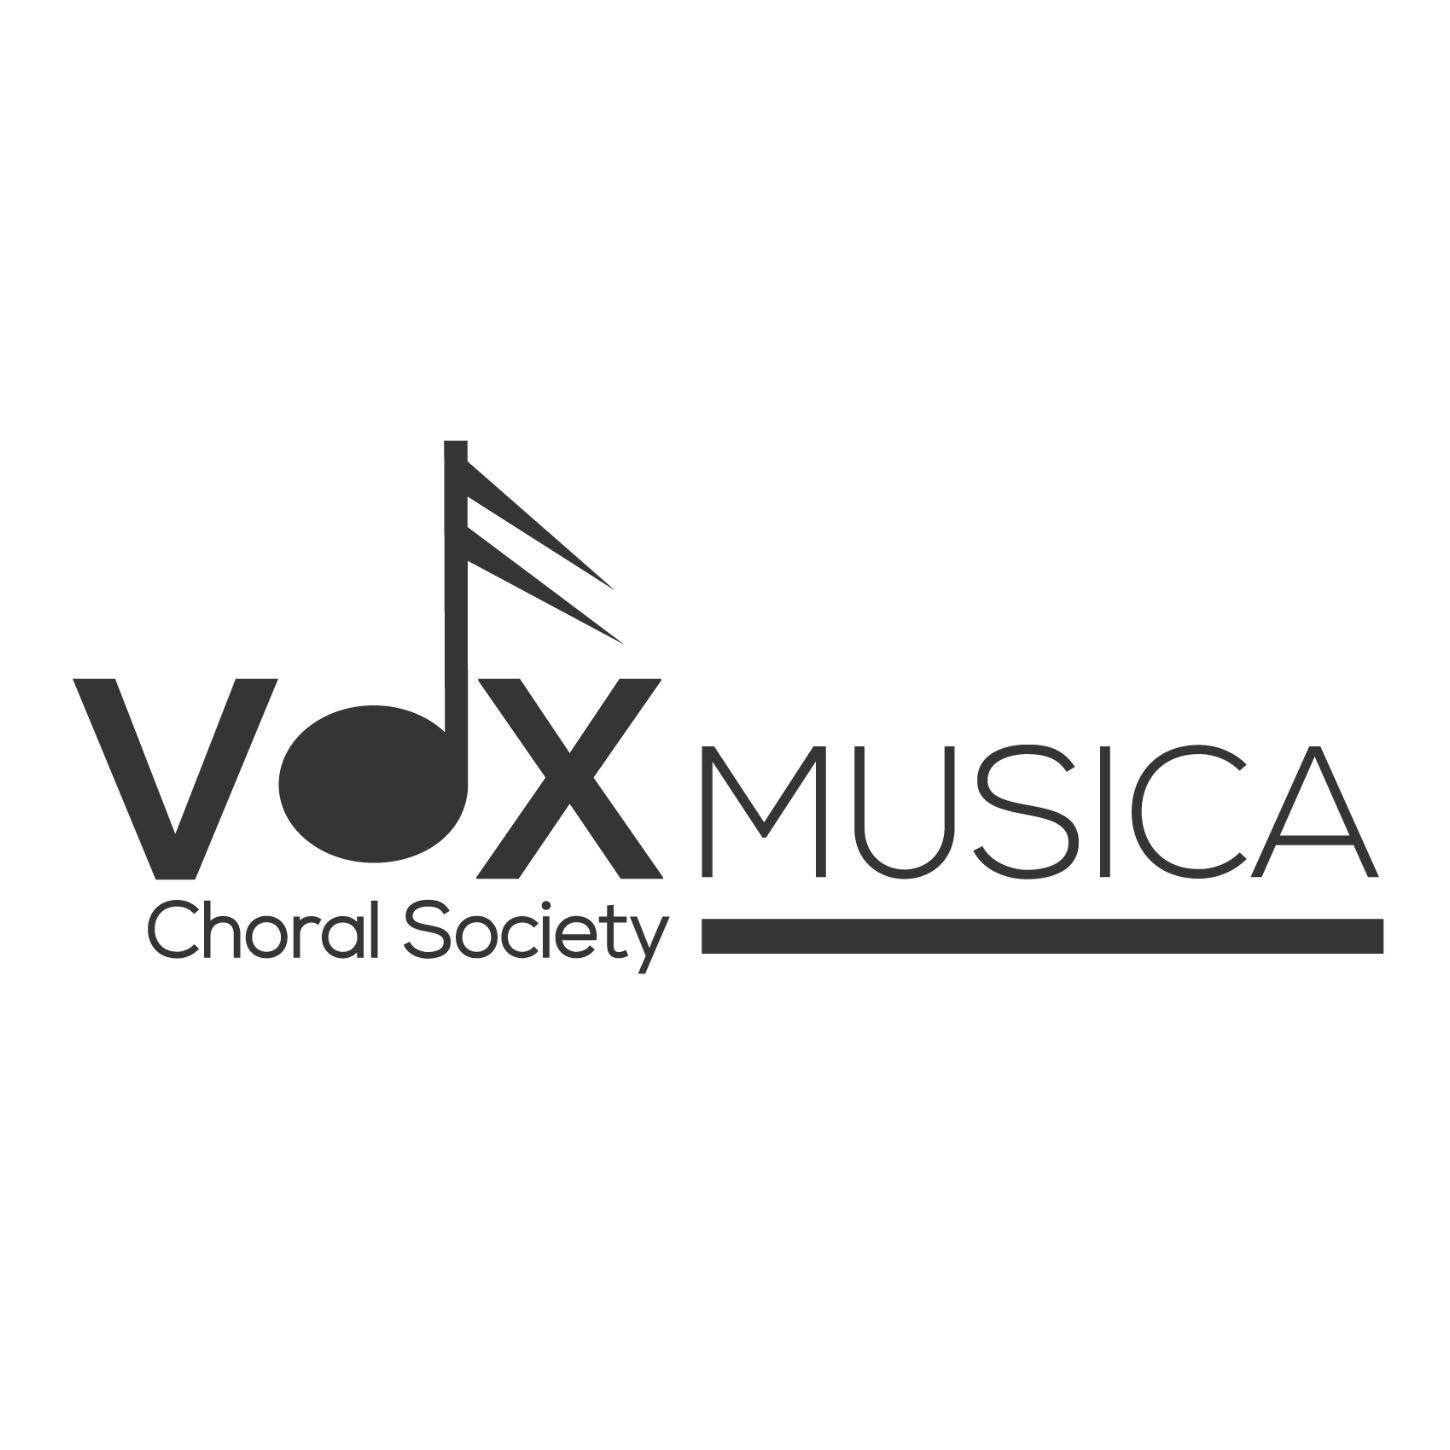 Vox Musica Choral Society